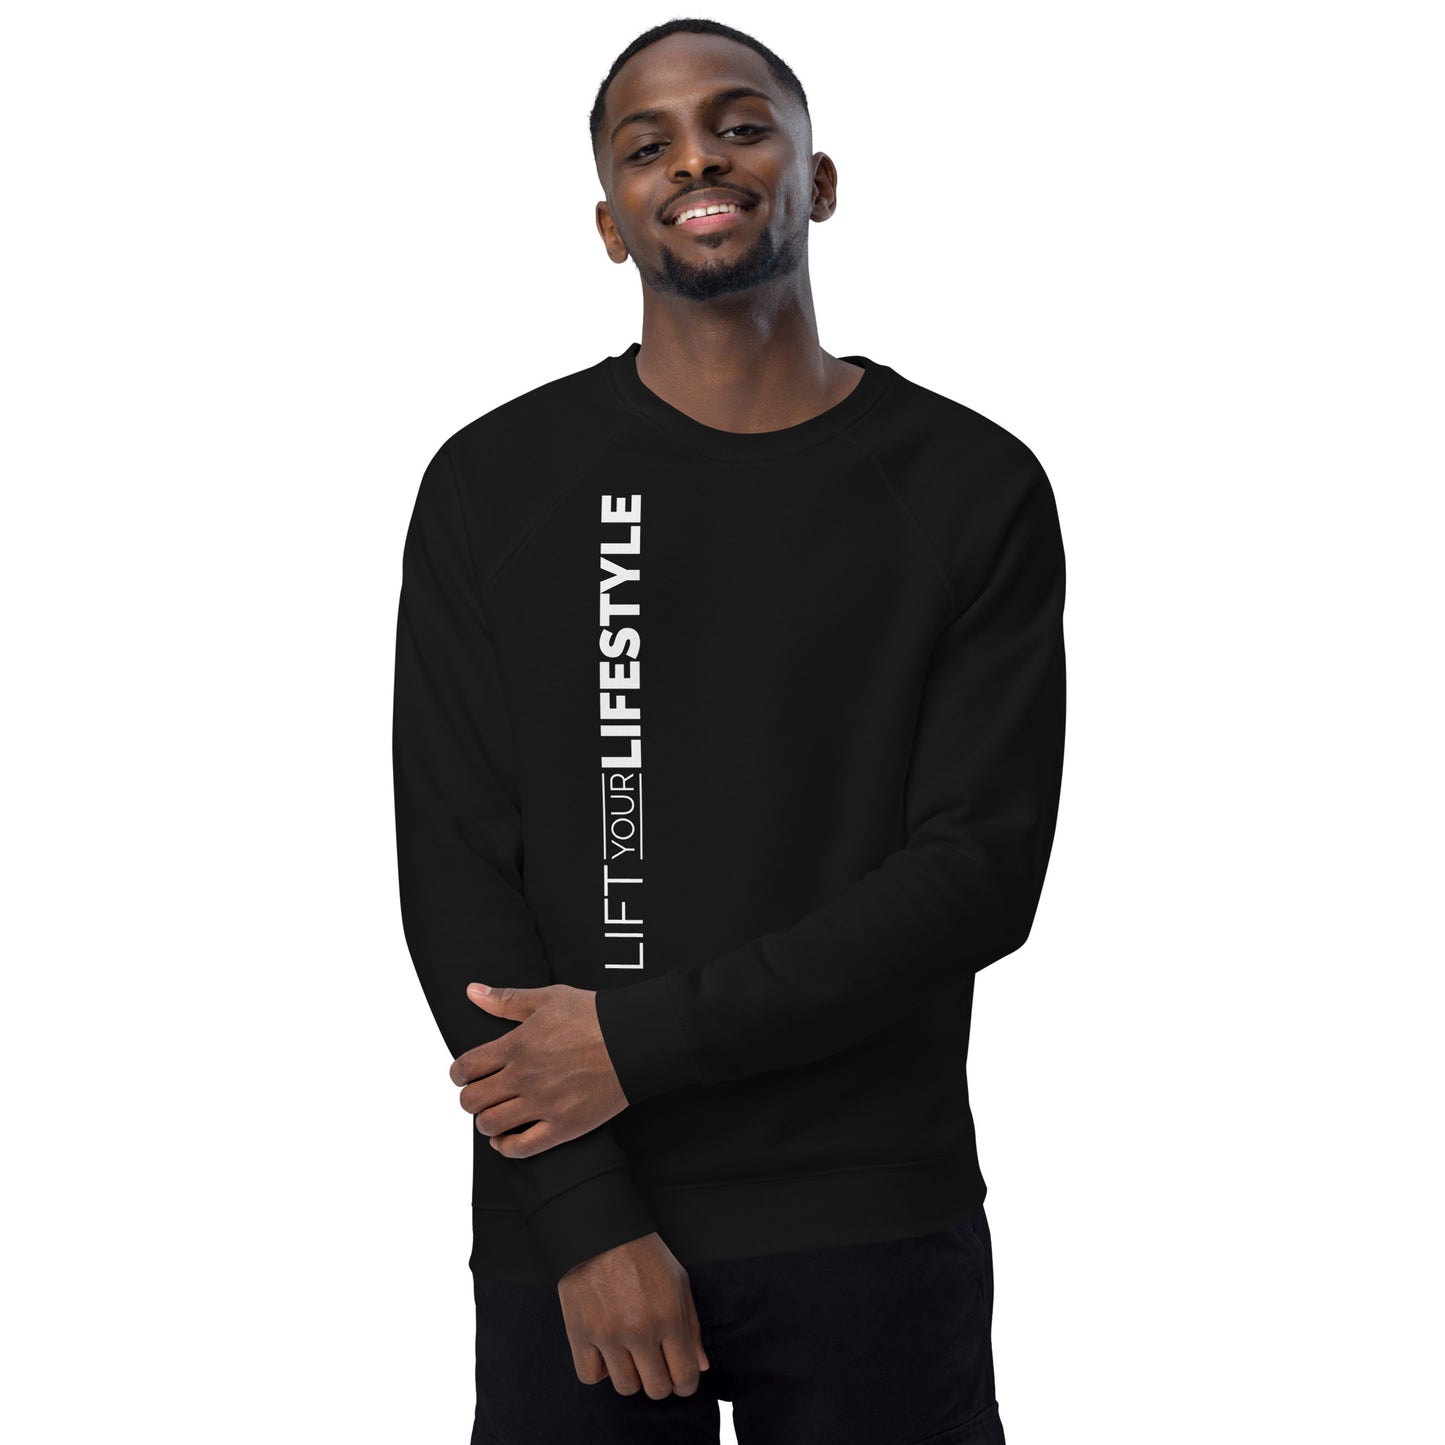 Lift Your Lifestyle Unisex organic raglan sweatshirt